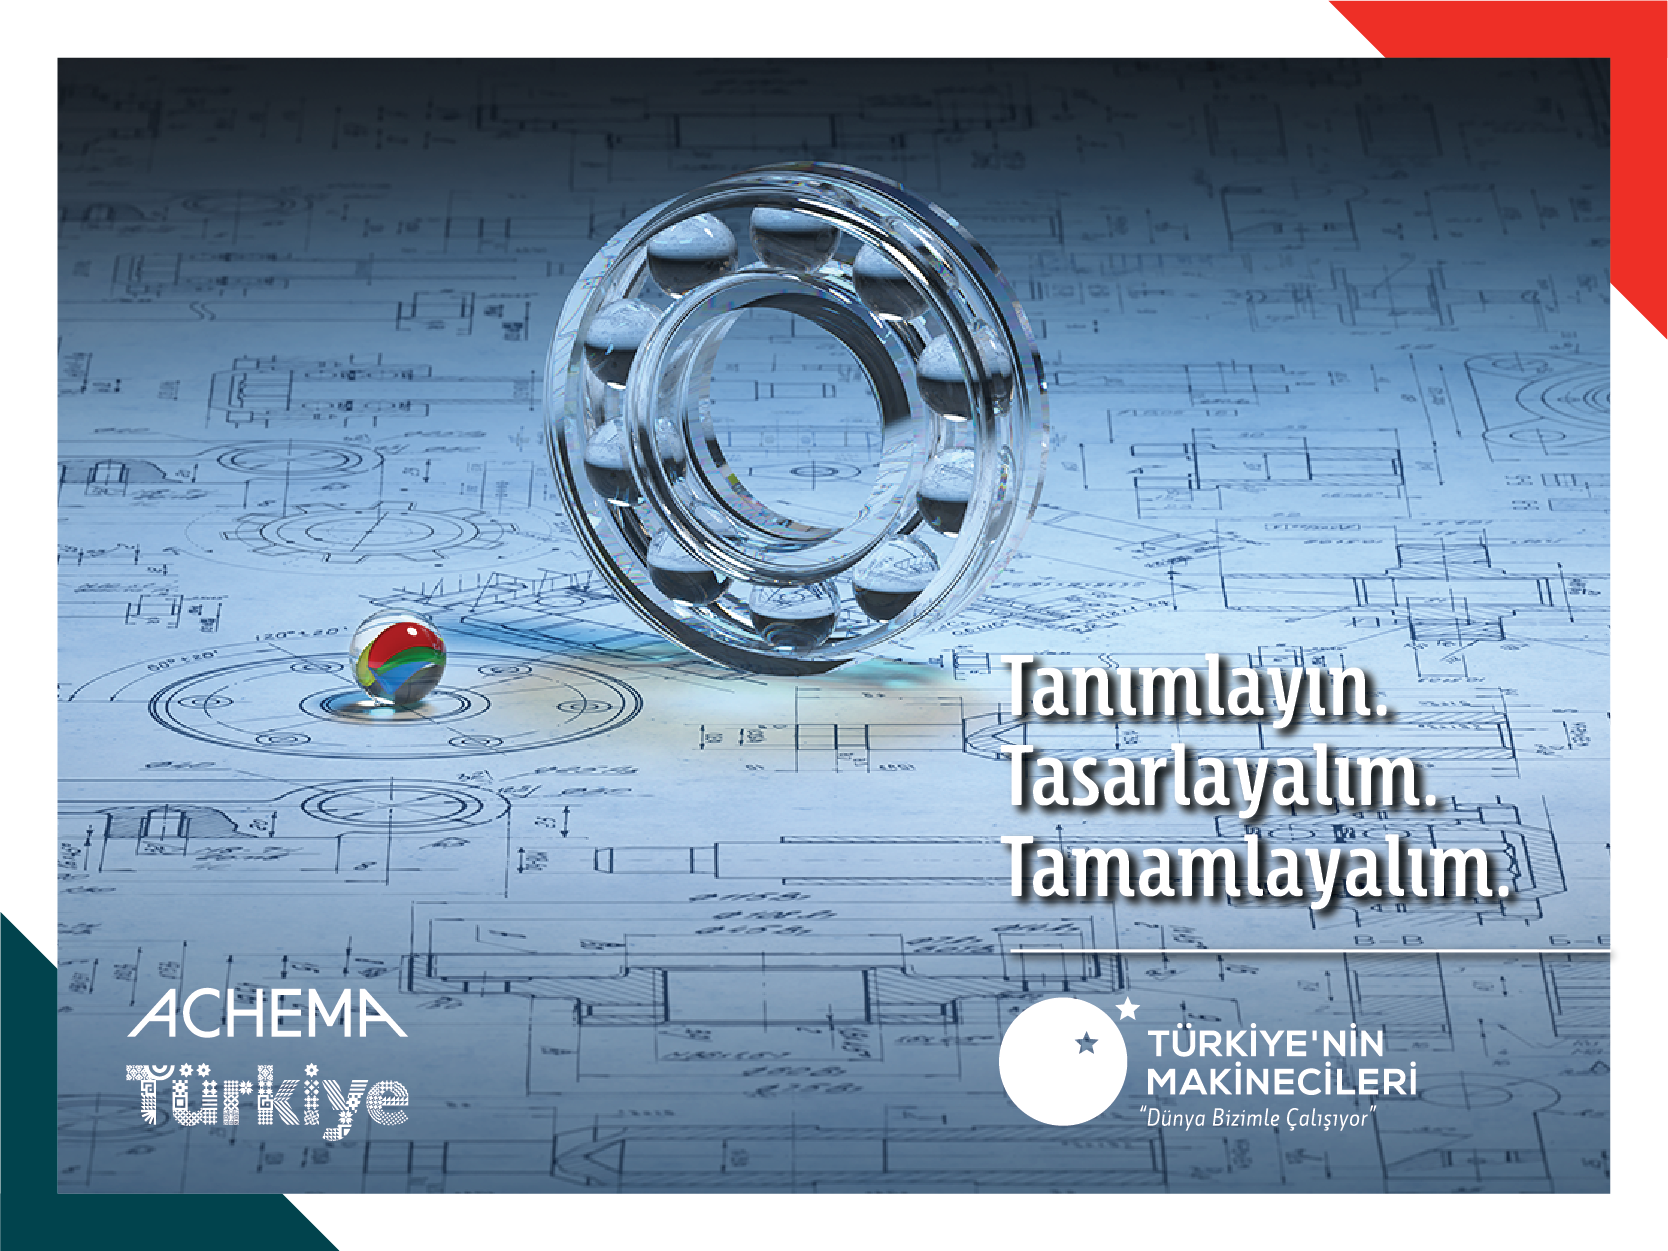 Türkiye’nin Makinecileri Achema Pulse 2021’e Katıldı